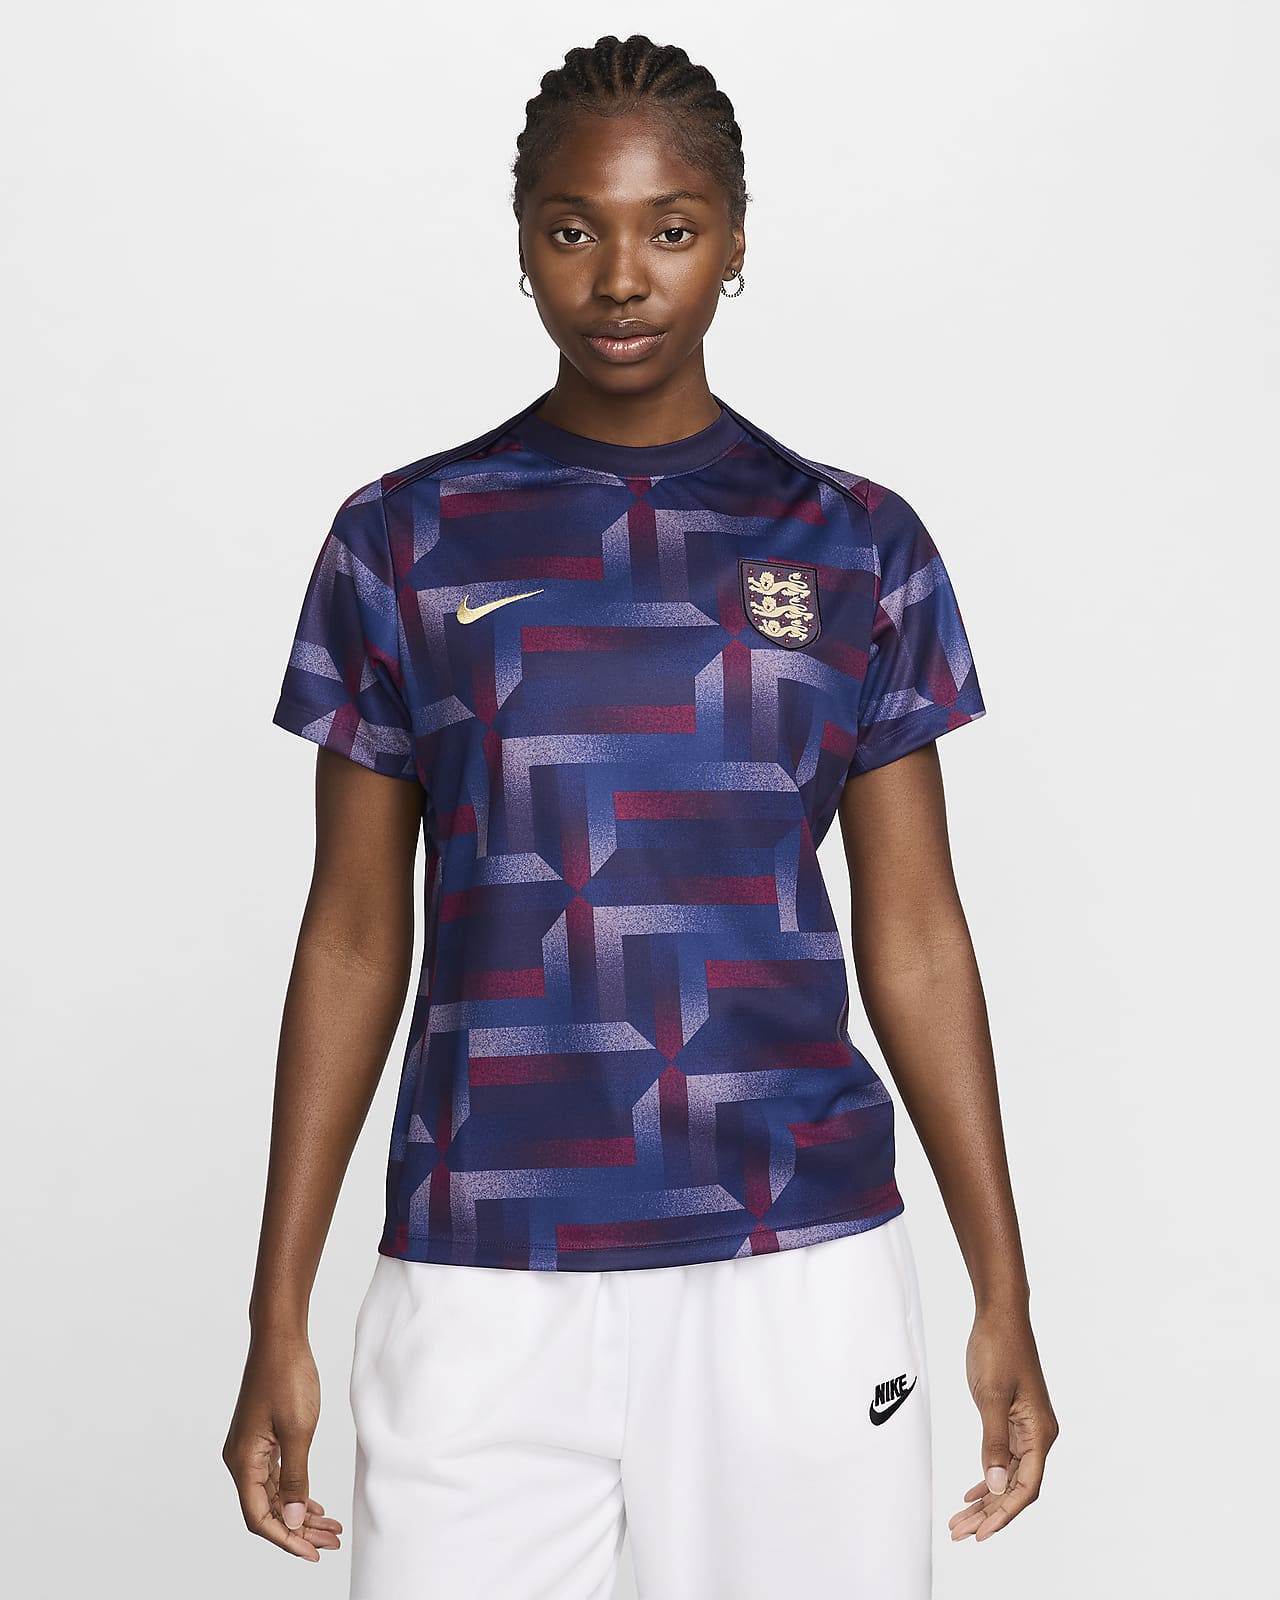 England Academy Pro Nike Dri-FIT Pre-Match-fodboldtrøje med korte ærmer til kvinder